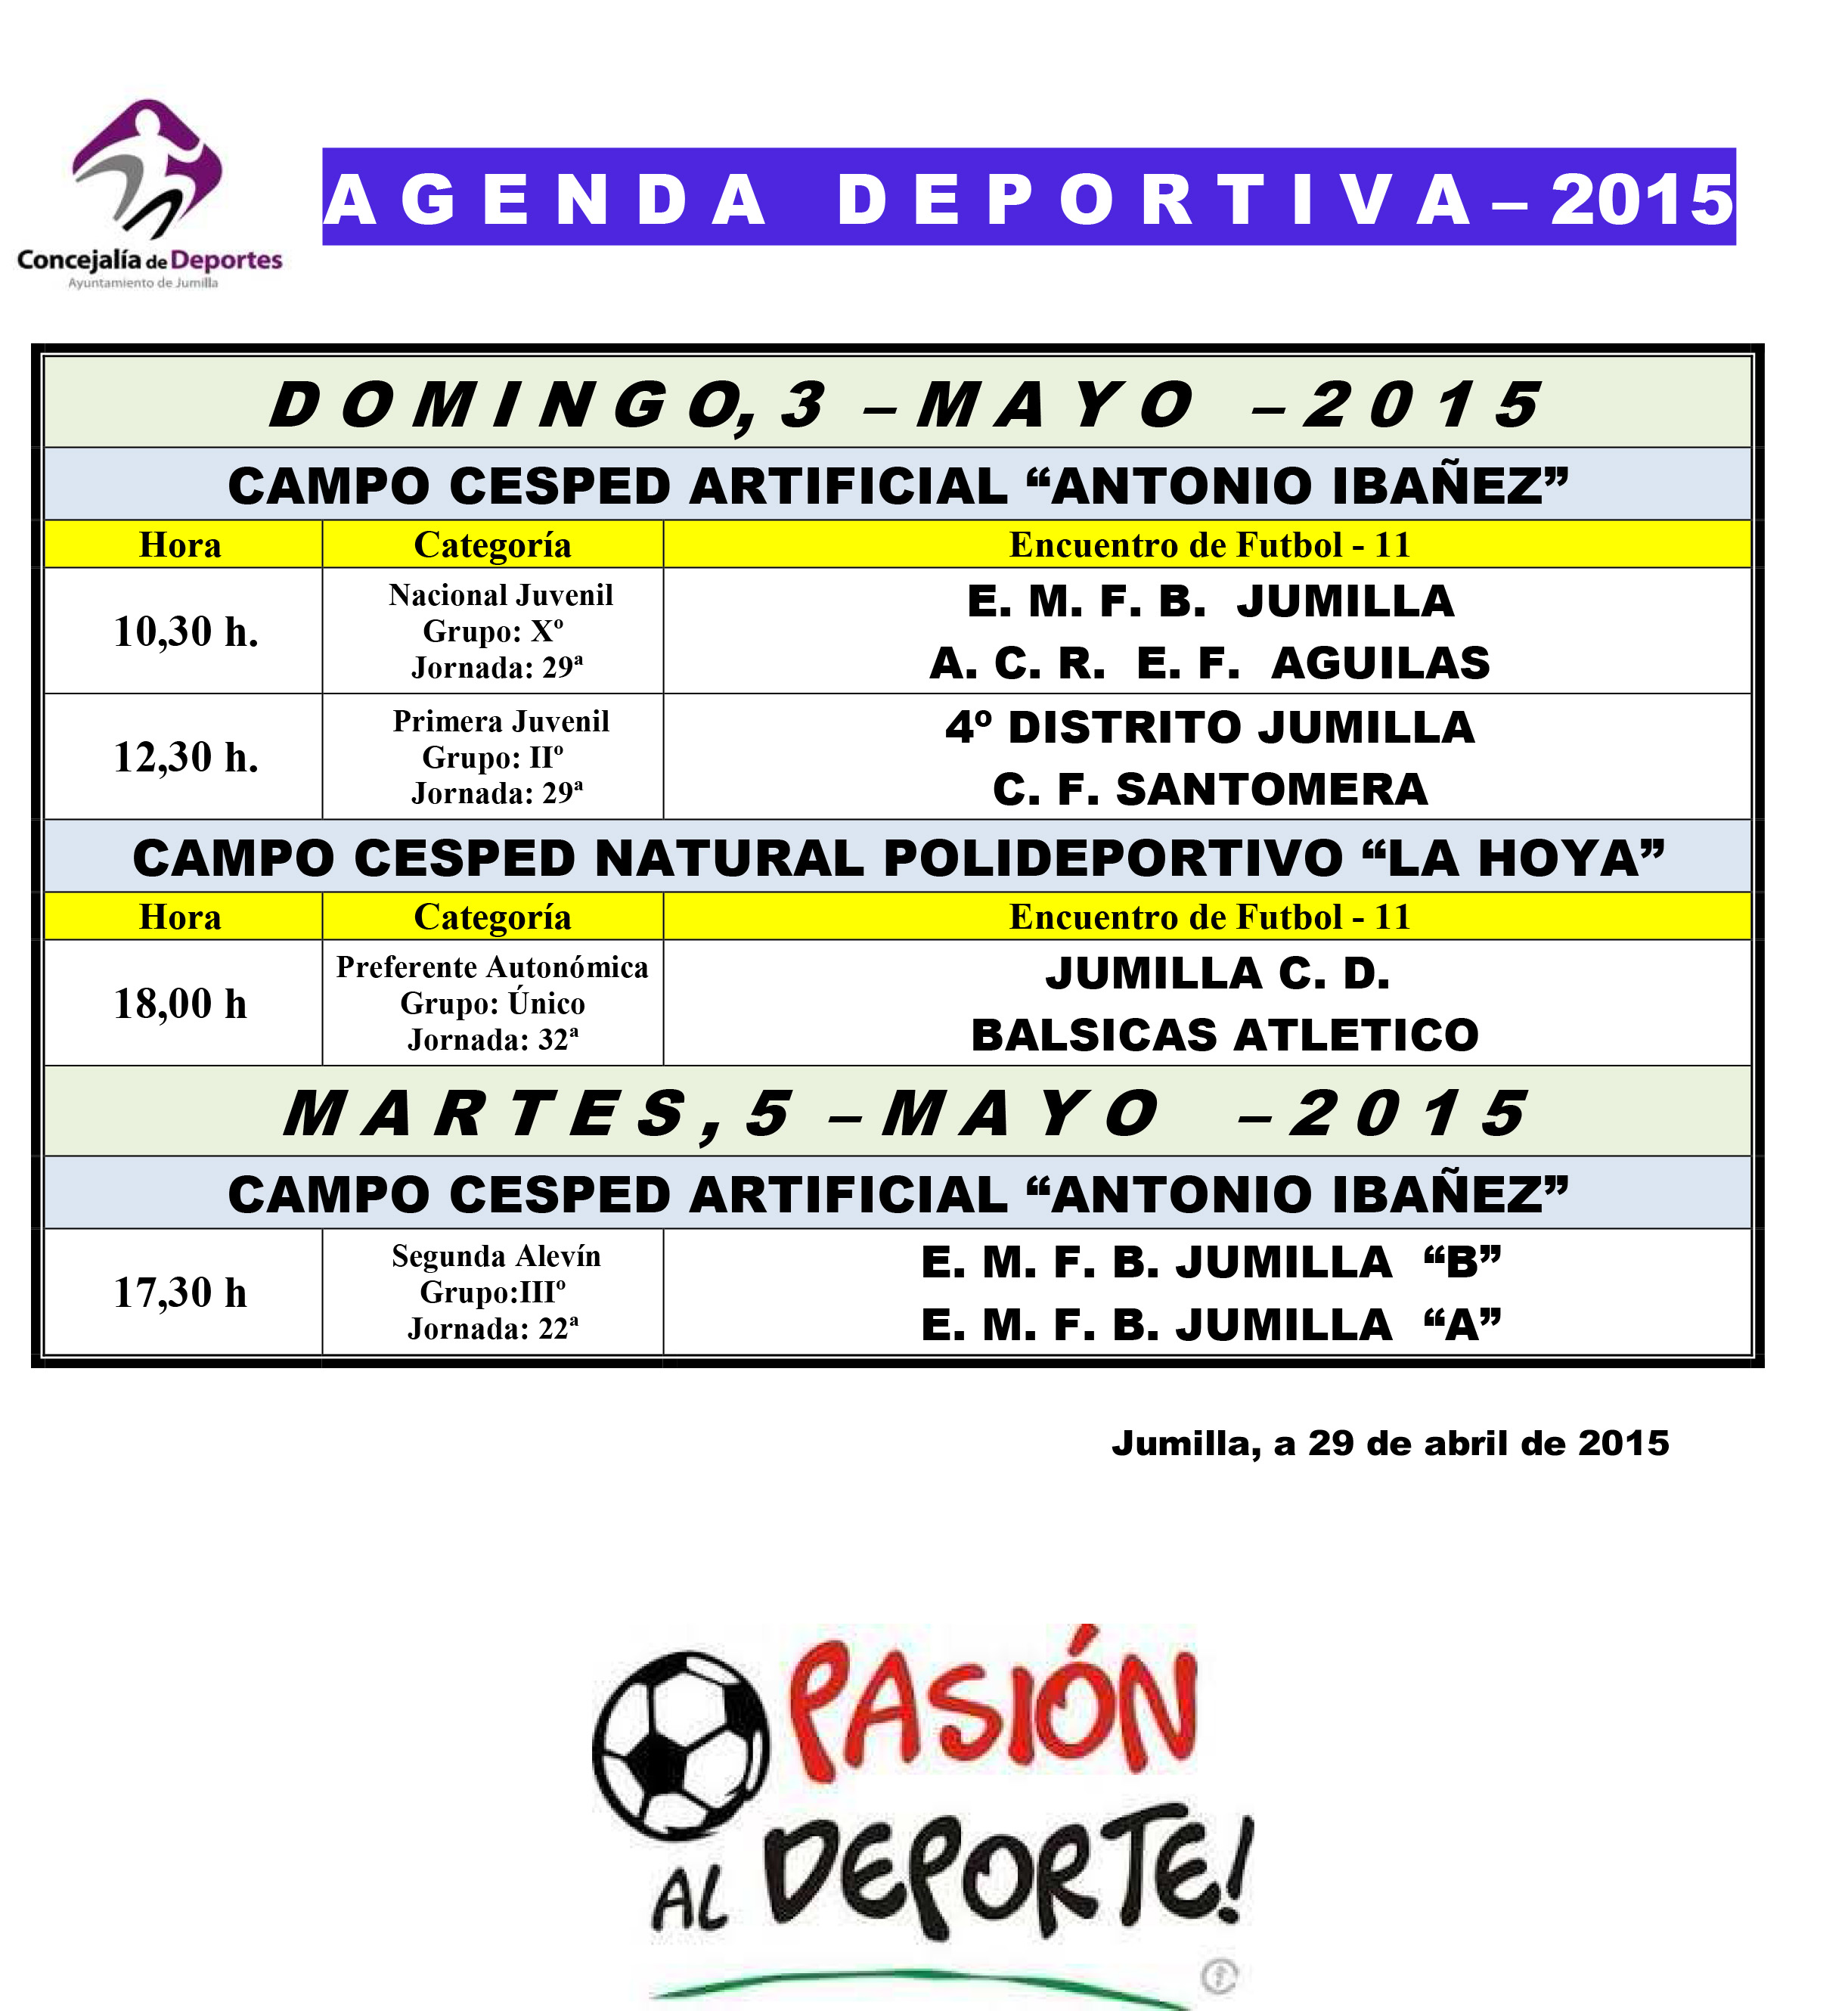 Agenda deportiva de los próximos días (24, 25 y 26 de abril) El Eco